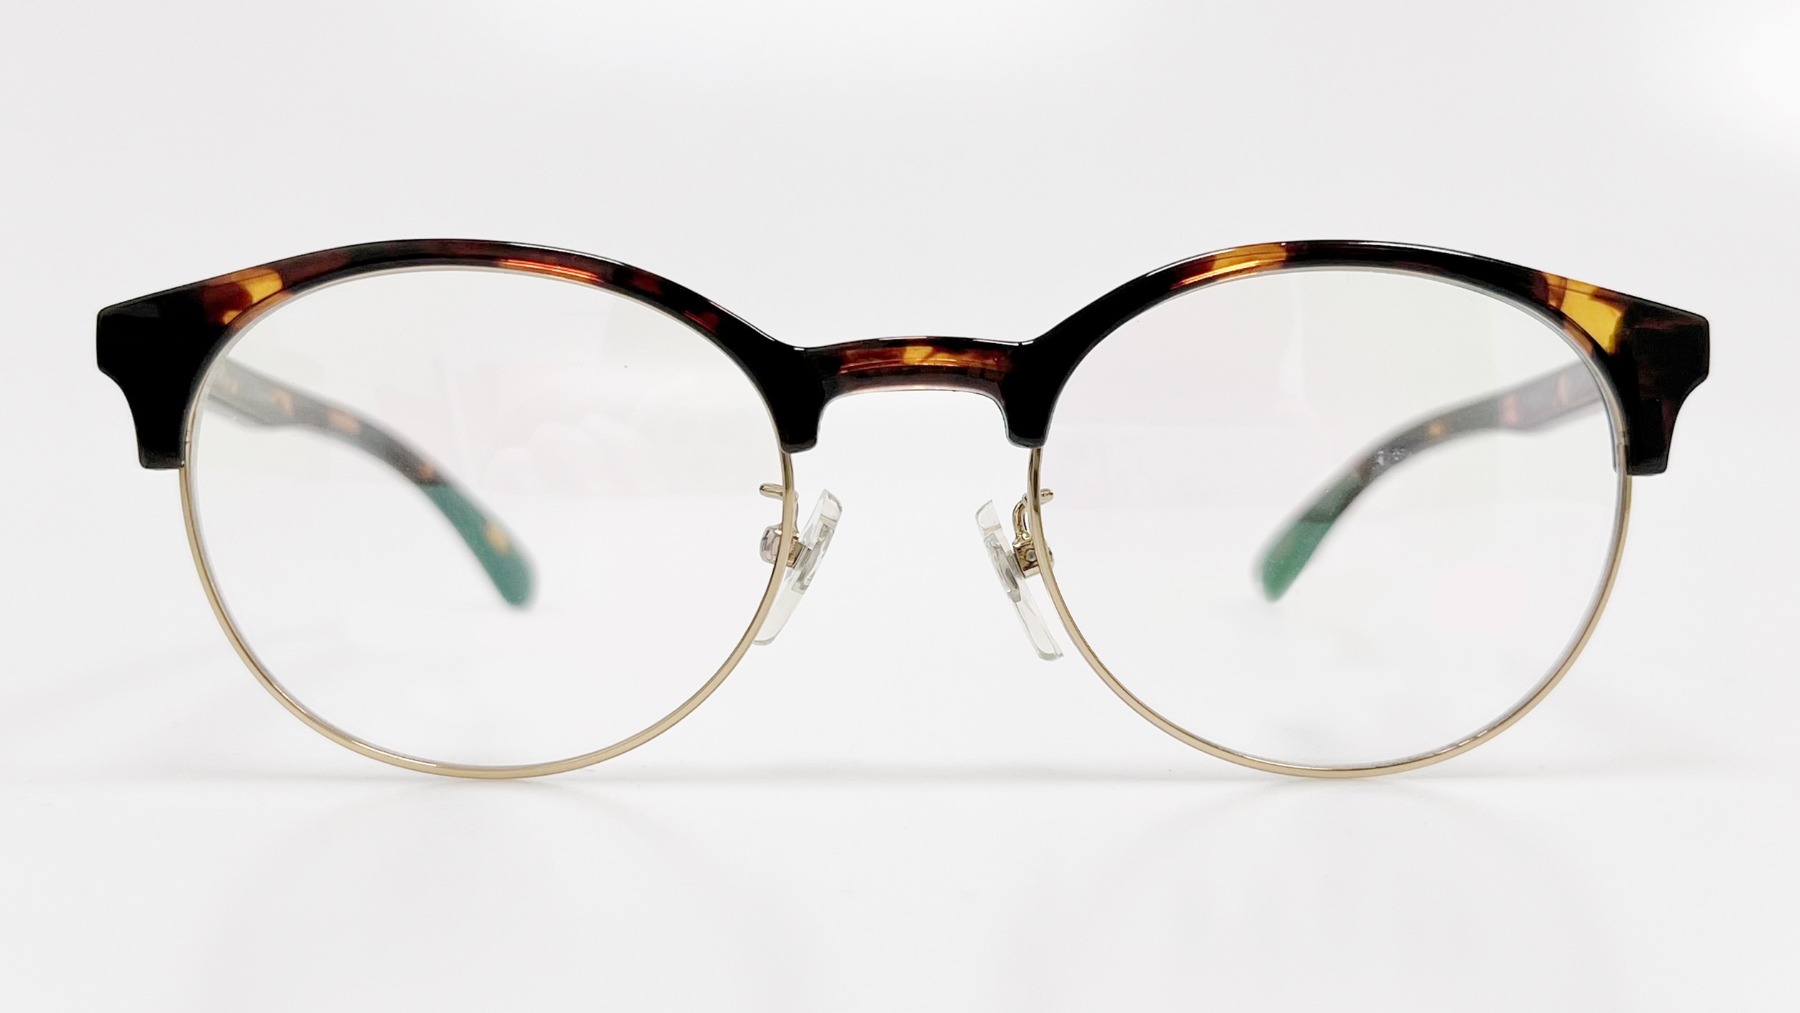 HORIEN_HN8033, Korean glasses, sunglasses, eyeglasses, glasses